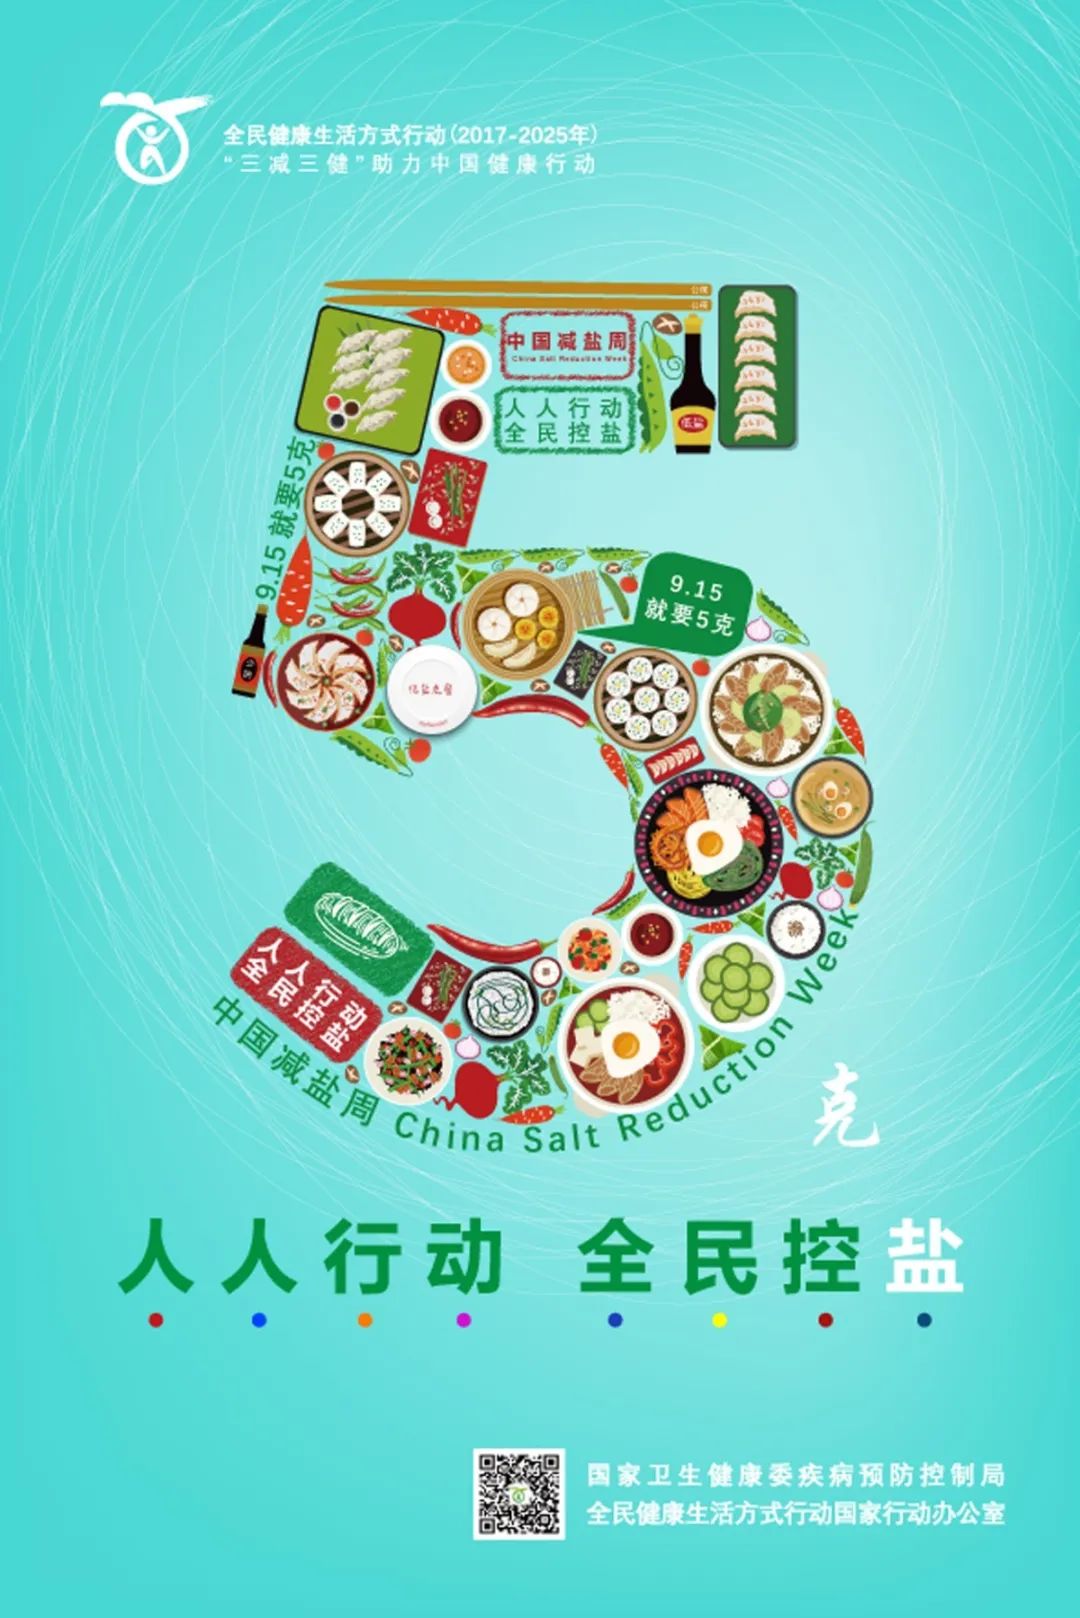 【卫生健康宣传日】中国减盐周——人人行动，全民控盐，“就要5克”_少盐_食品_食物